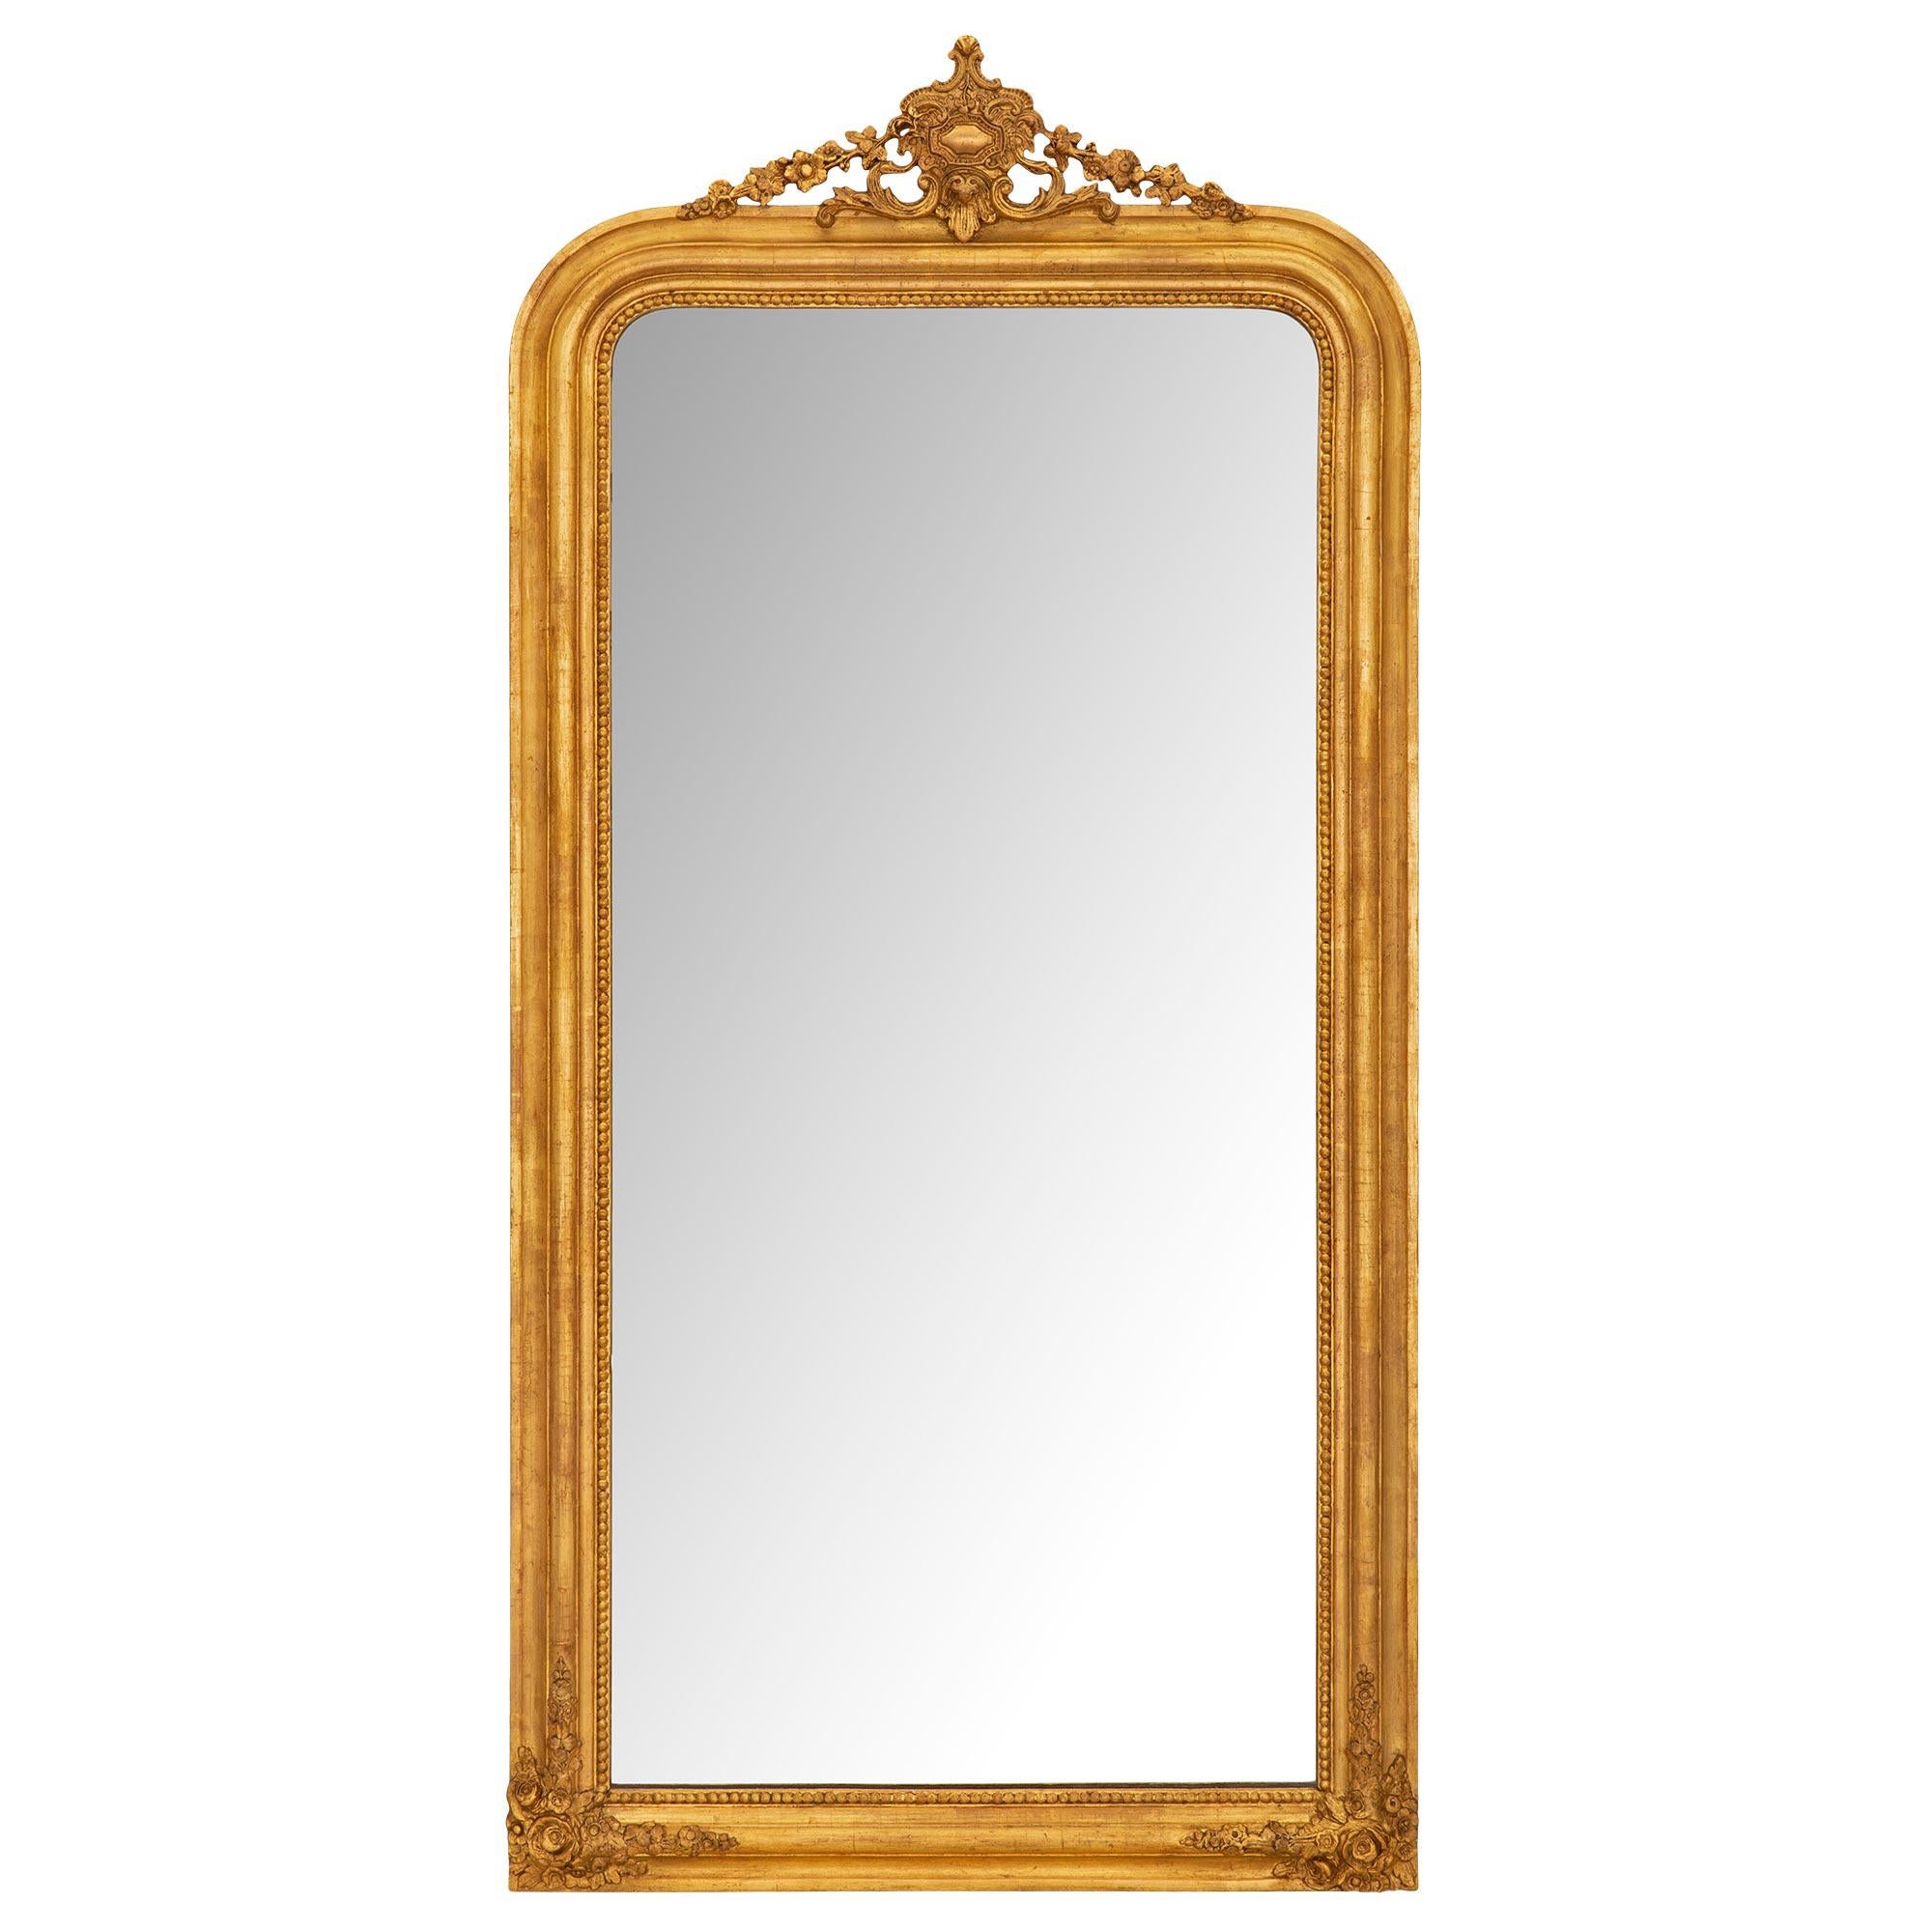 Giltwood-Spiegel aus dem 19. Jahrhundert, Louis Philippe-Periode